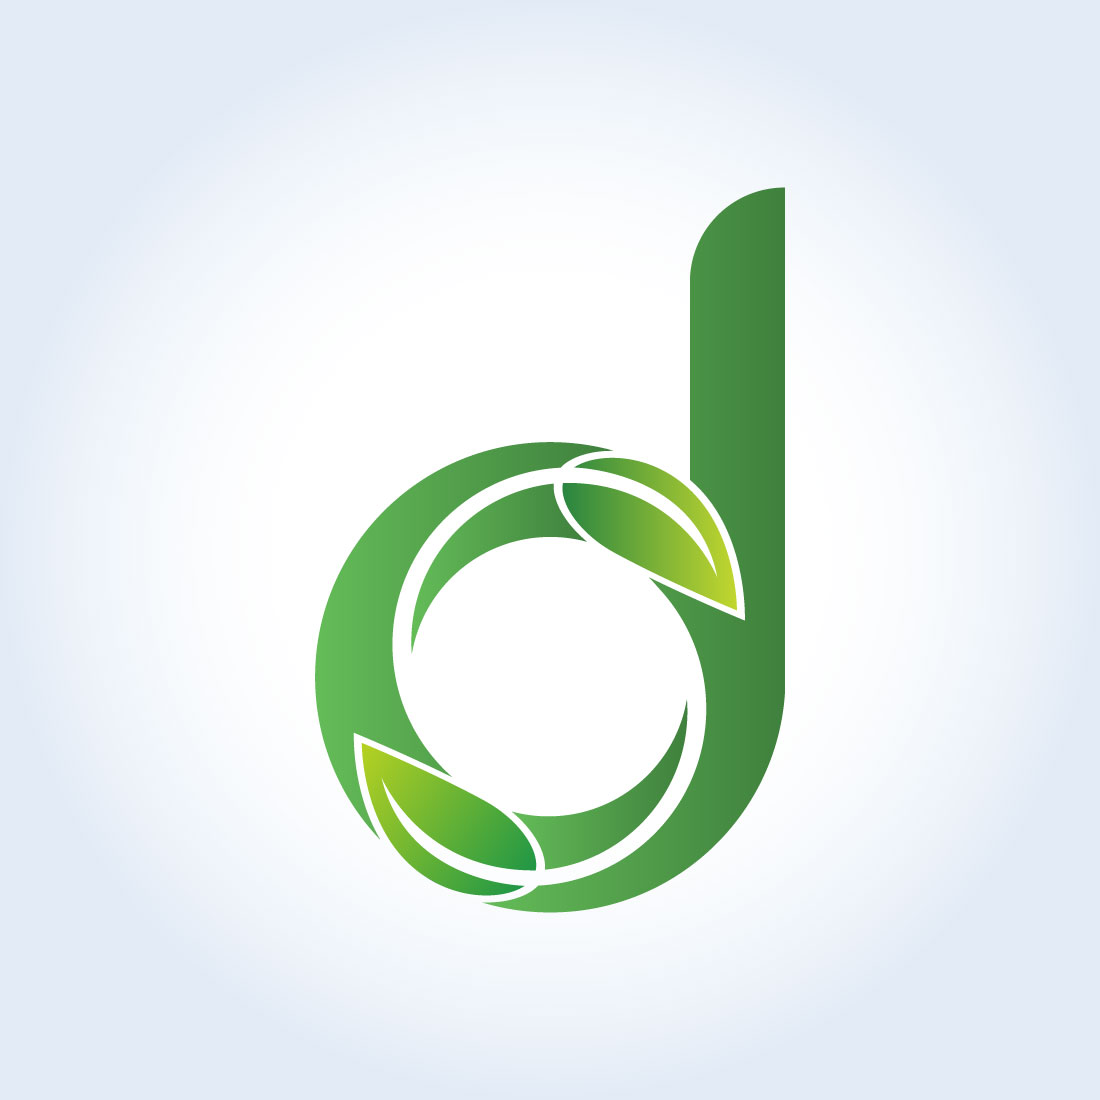 Leafy Letter D Green Logo Design cover image.